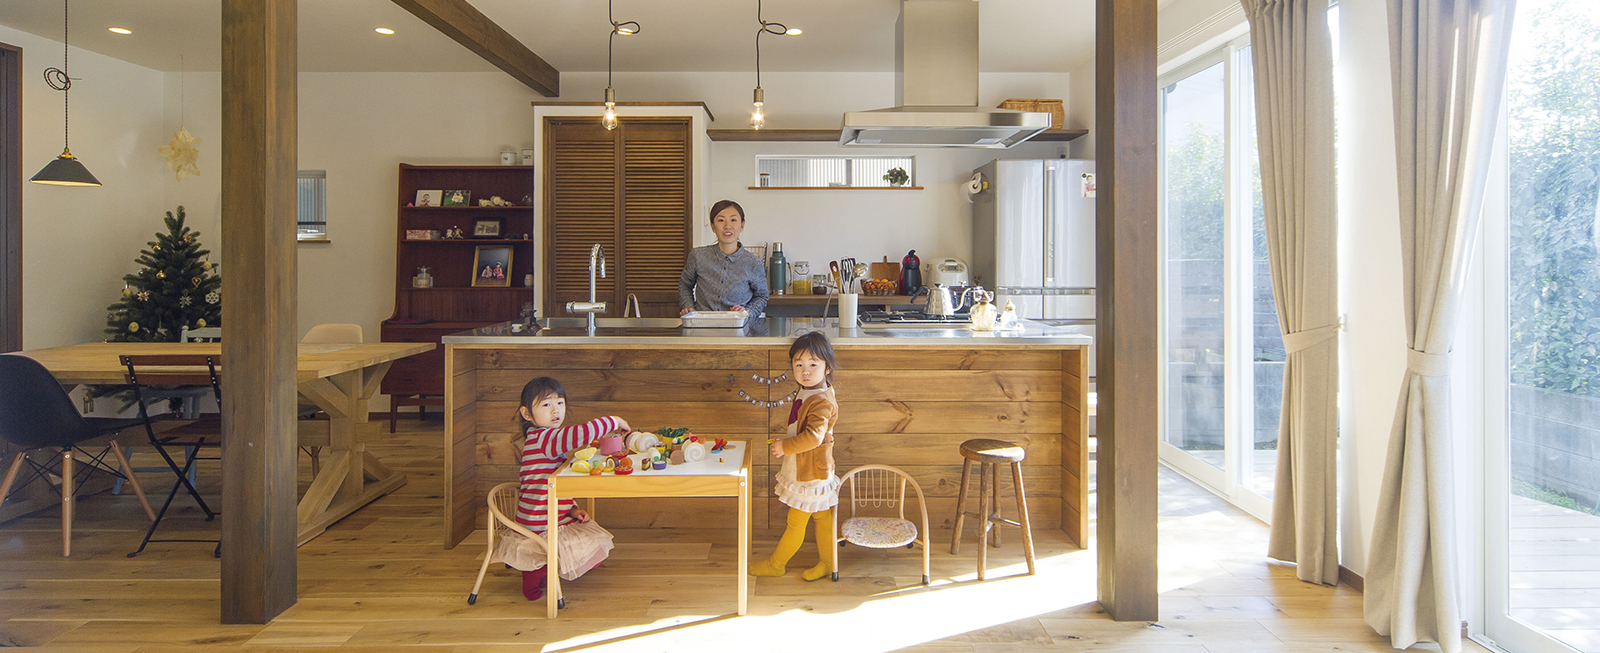 賃貸住宅 福山市で木造の家のマイホームを建てるなら さくら建設 さくら建設 株 自然素材 デザインリフォーム 広島 福山 一級建築設計